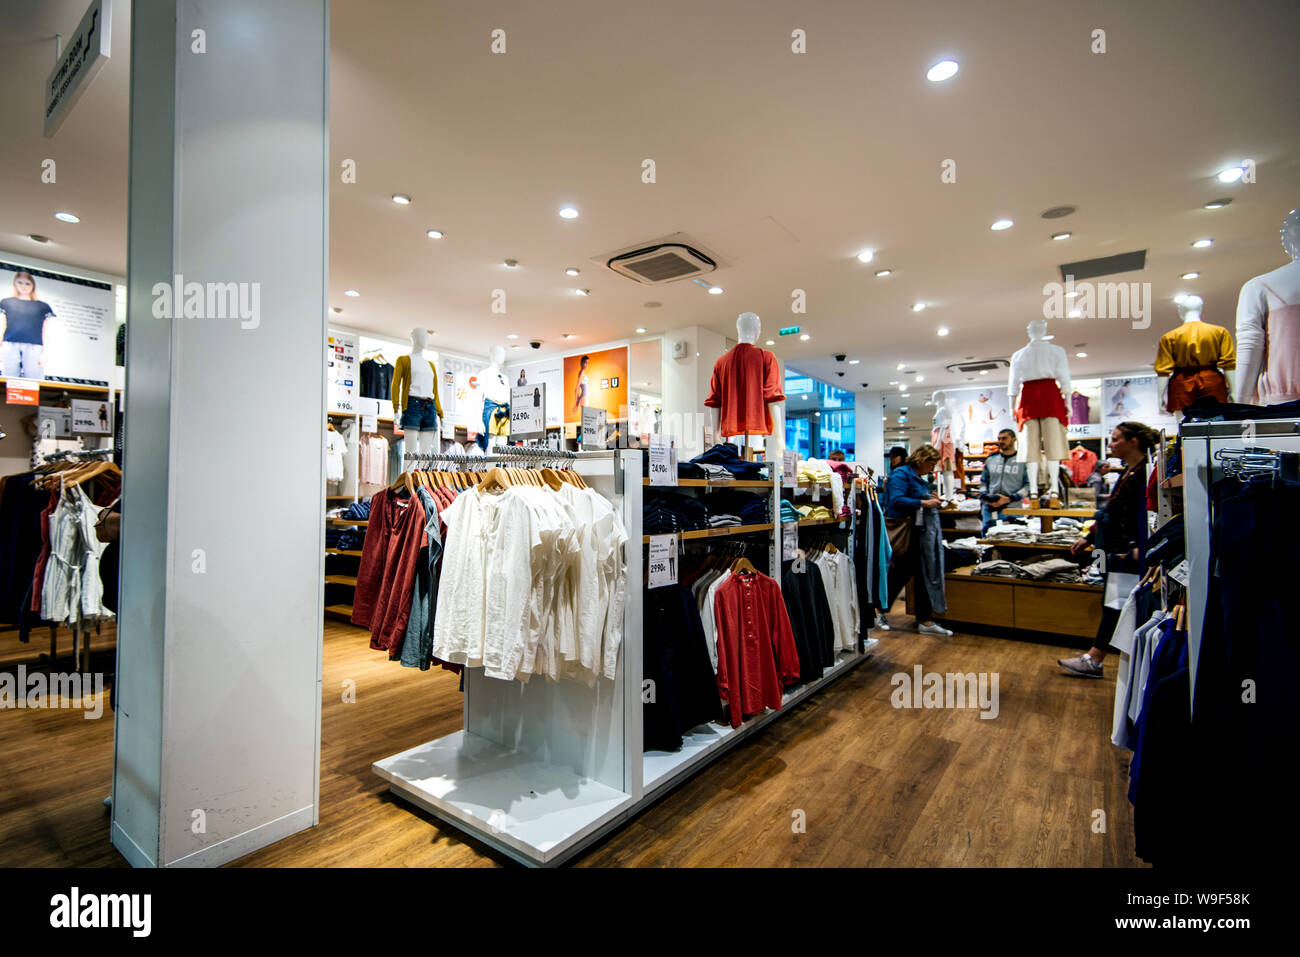 Straßburg Frankreich - Mai 18, 2019: das Innere der modernen Uniqlo Fashion  Store verkaufen Große Auswahl an Frauen und männliche Kleidung  Stockfotografie - Alamy